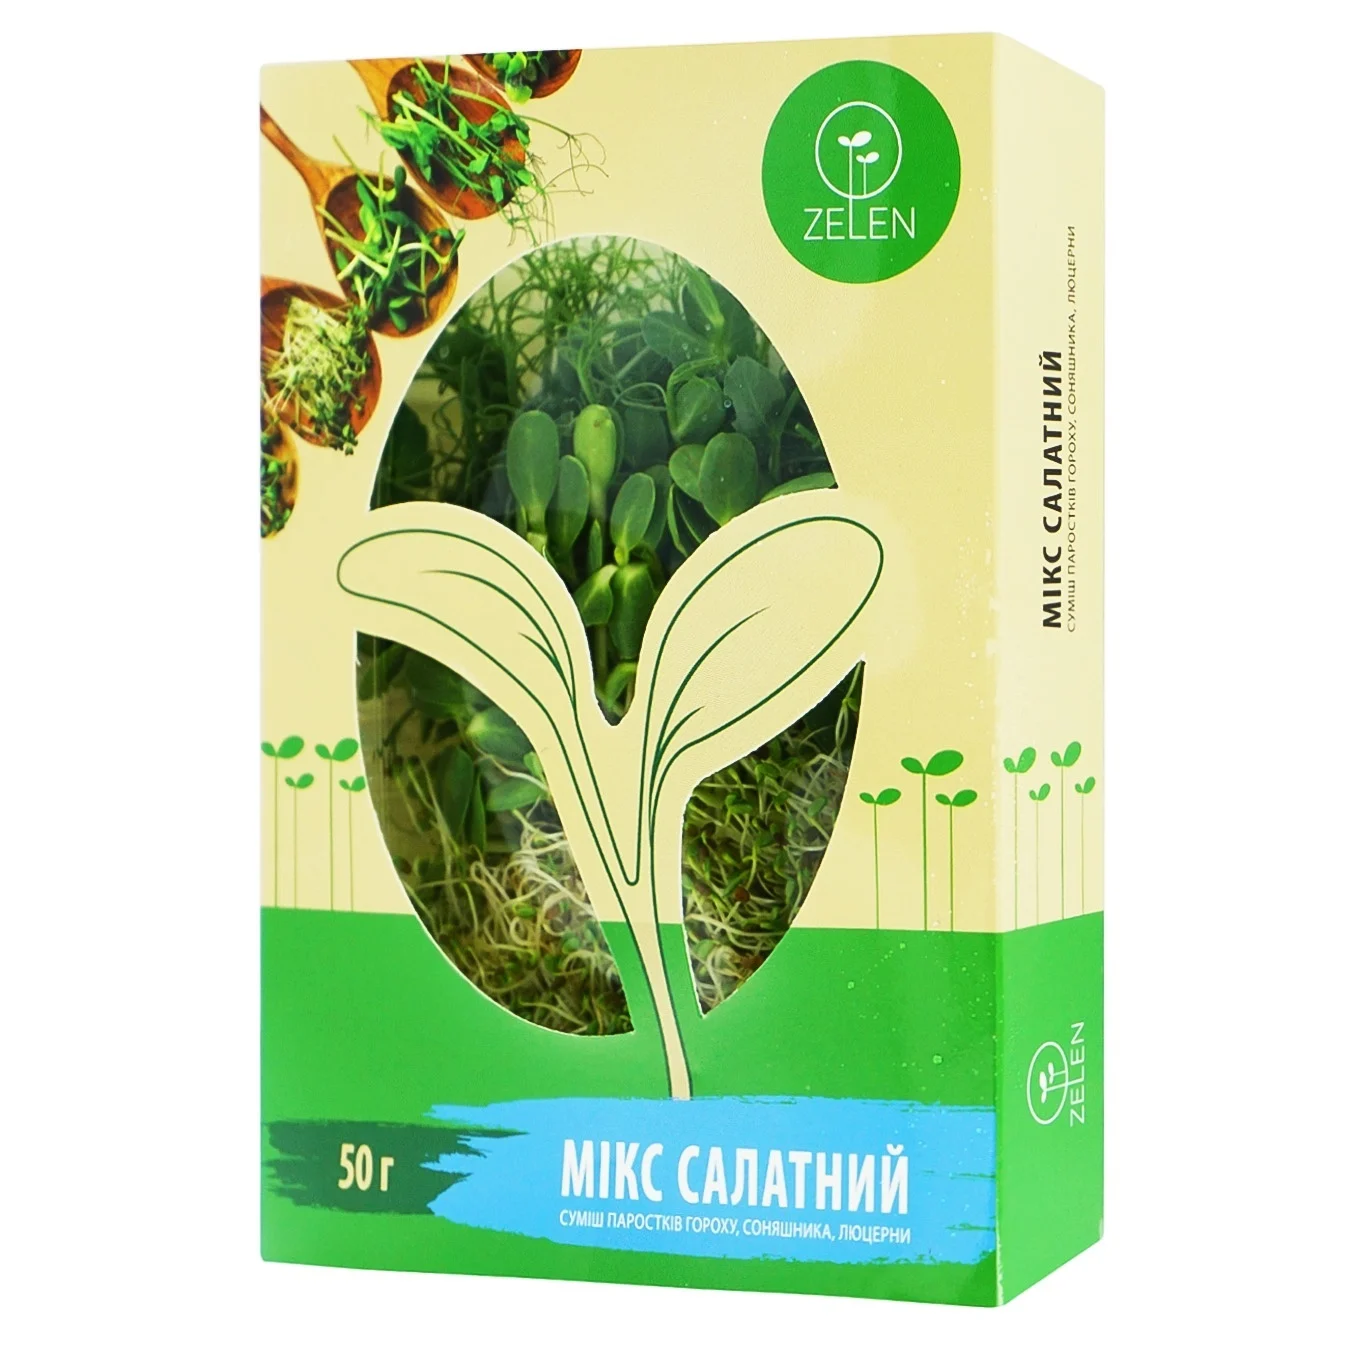 Zelen pea sprouts 50g